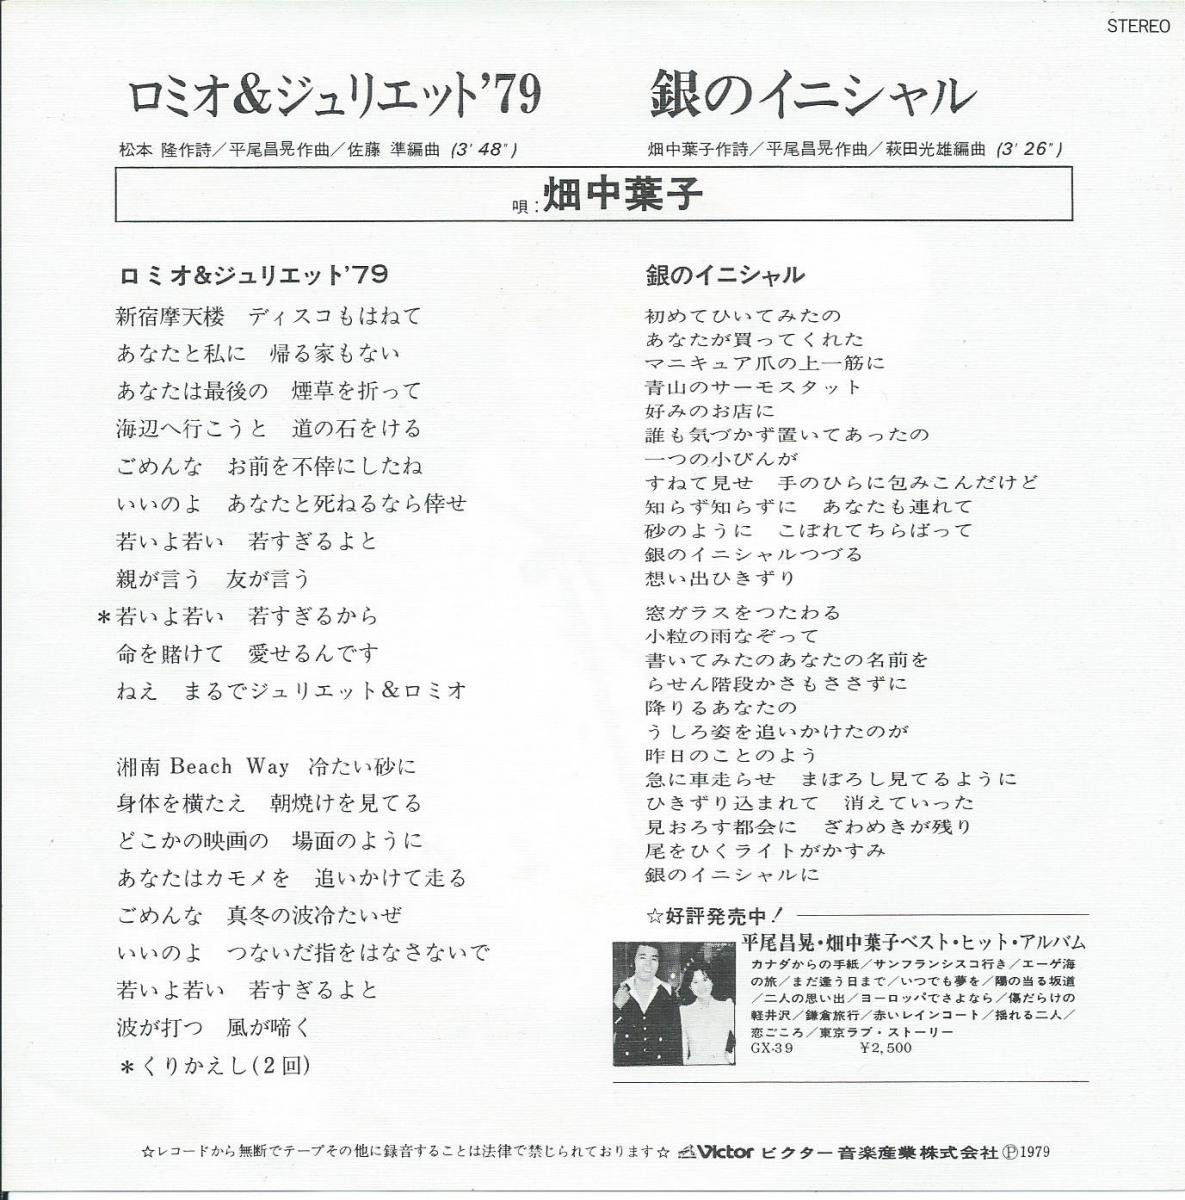 畑中葉子 YOKO HATANAKA / ロミオ & ジュリエット '79 / 銀のイニシャル (7